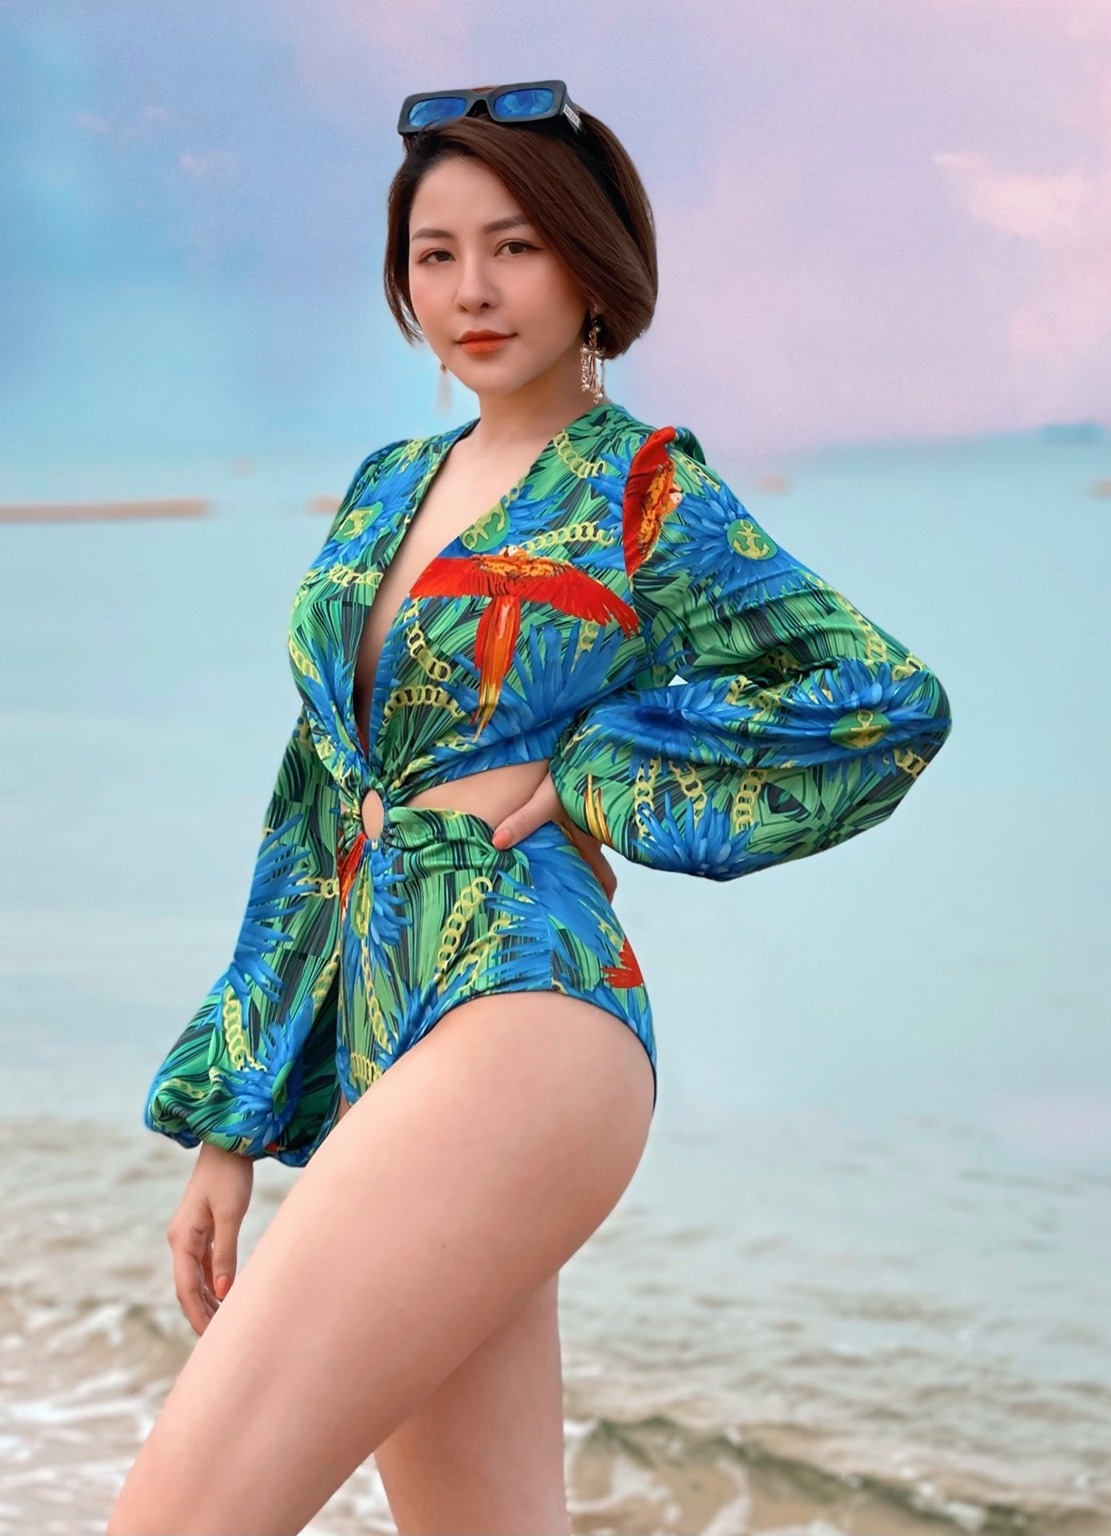 Trâm Anh khoe dáng nóng bỏng với bikini trên bãi biển khiến fan nam bối rối - 9